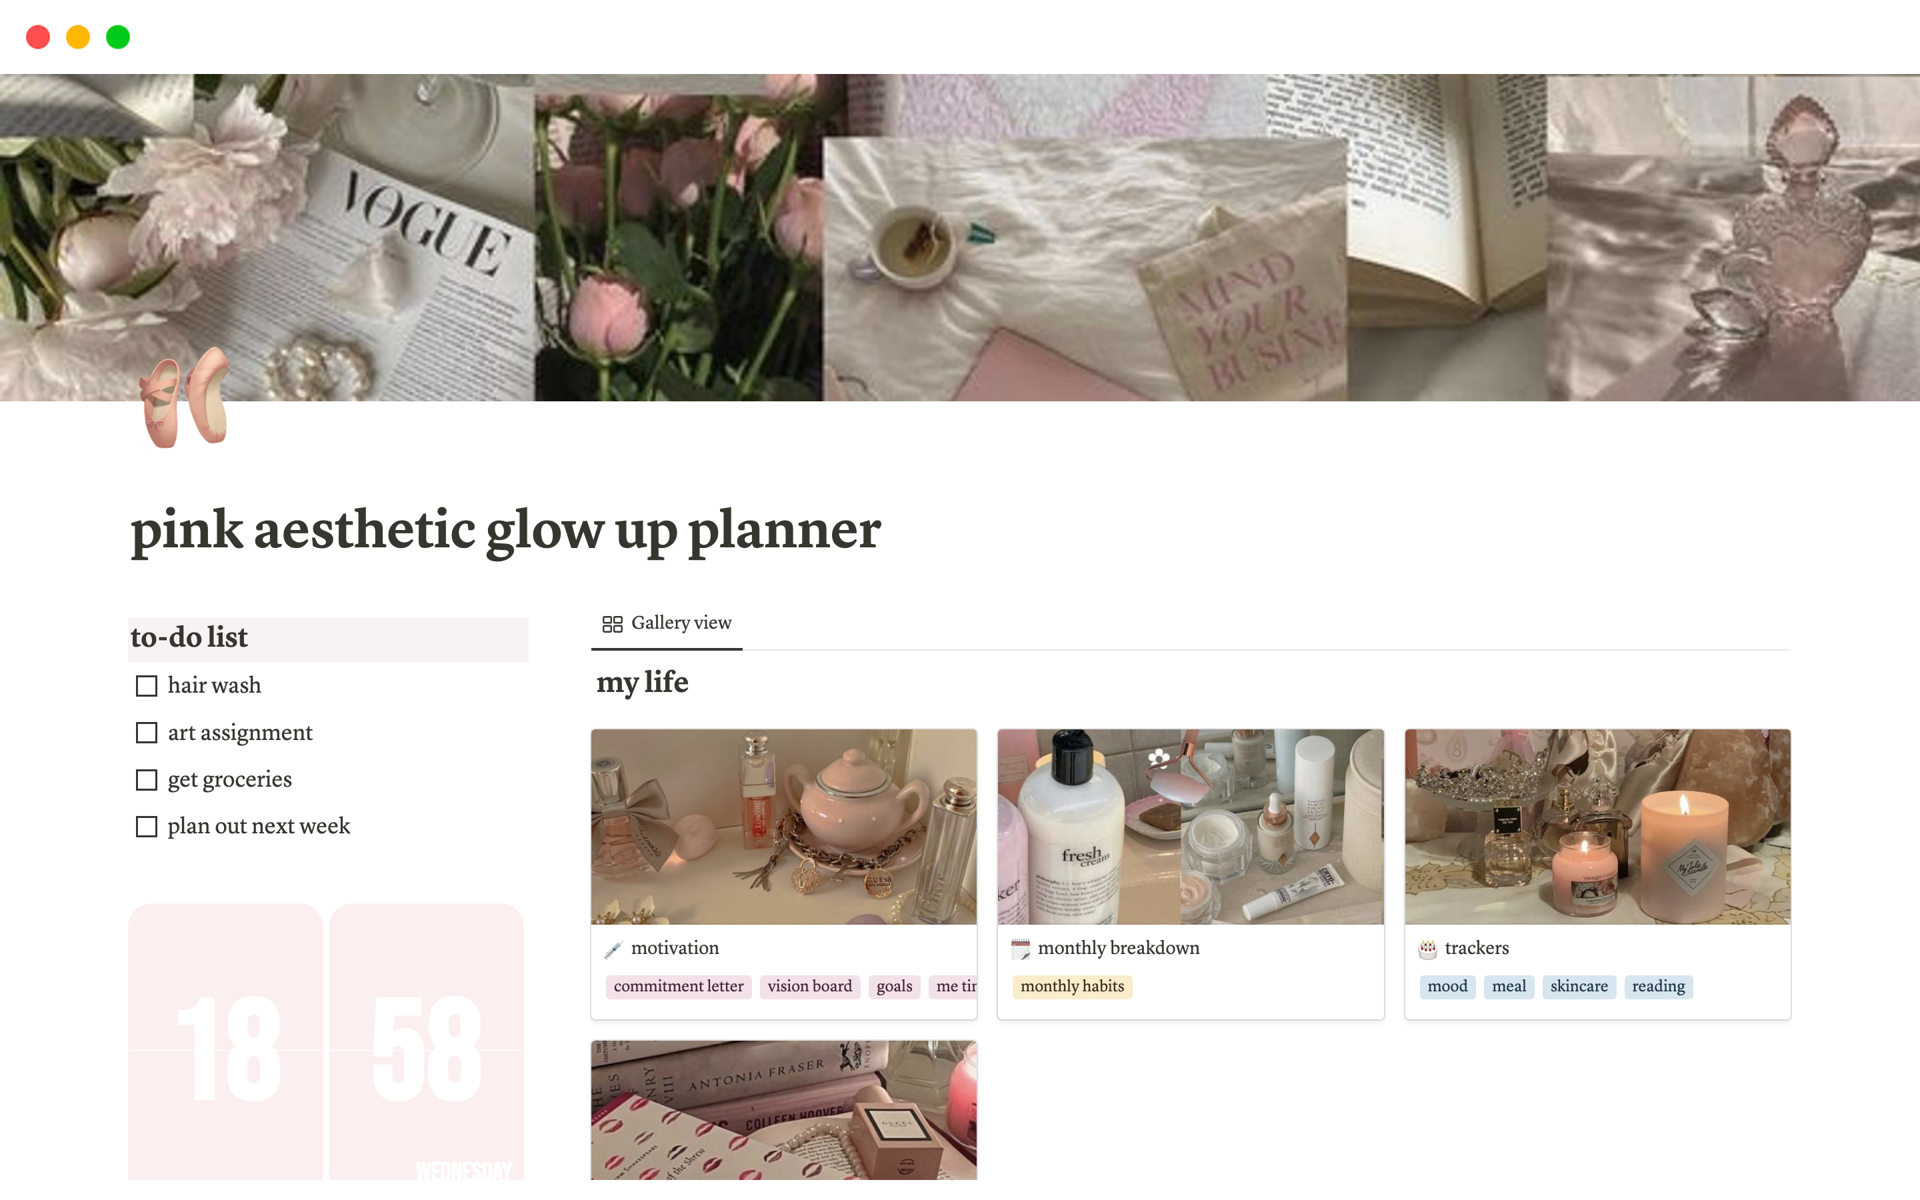 Eine Vorlagenvorschau für Pink aesthetic glow up planner